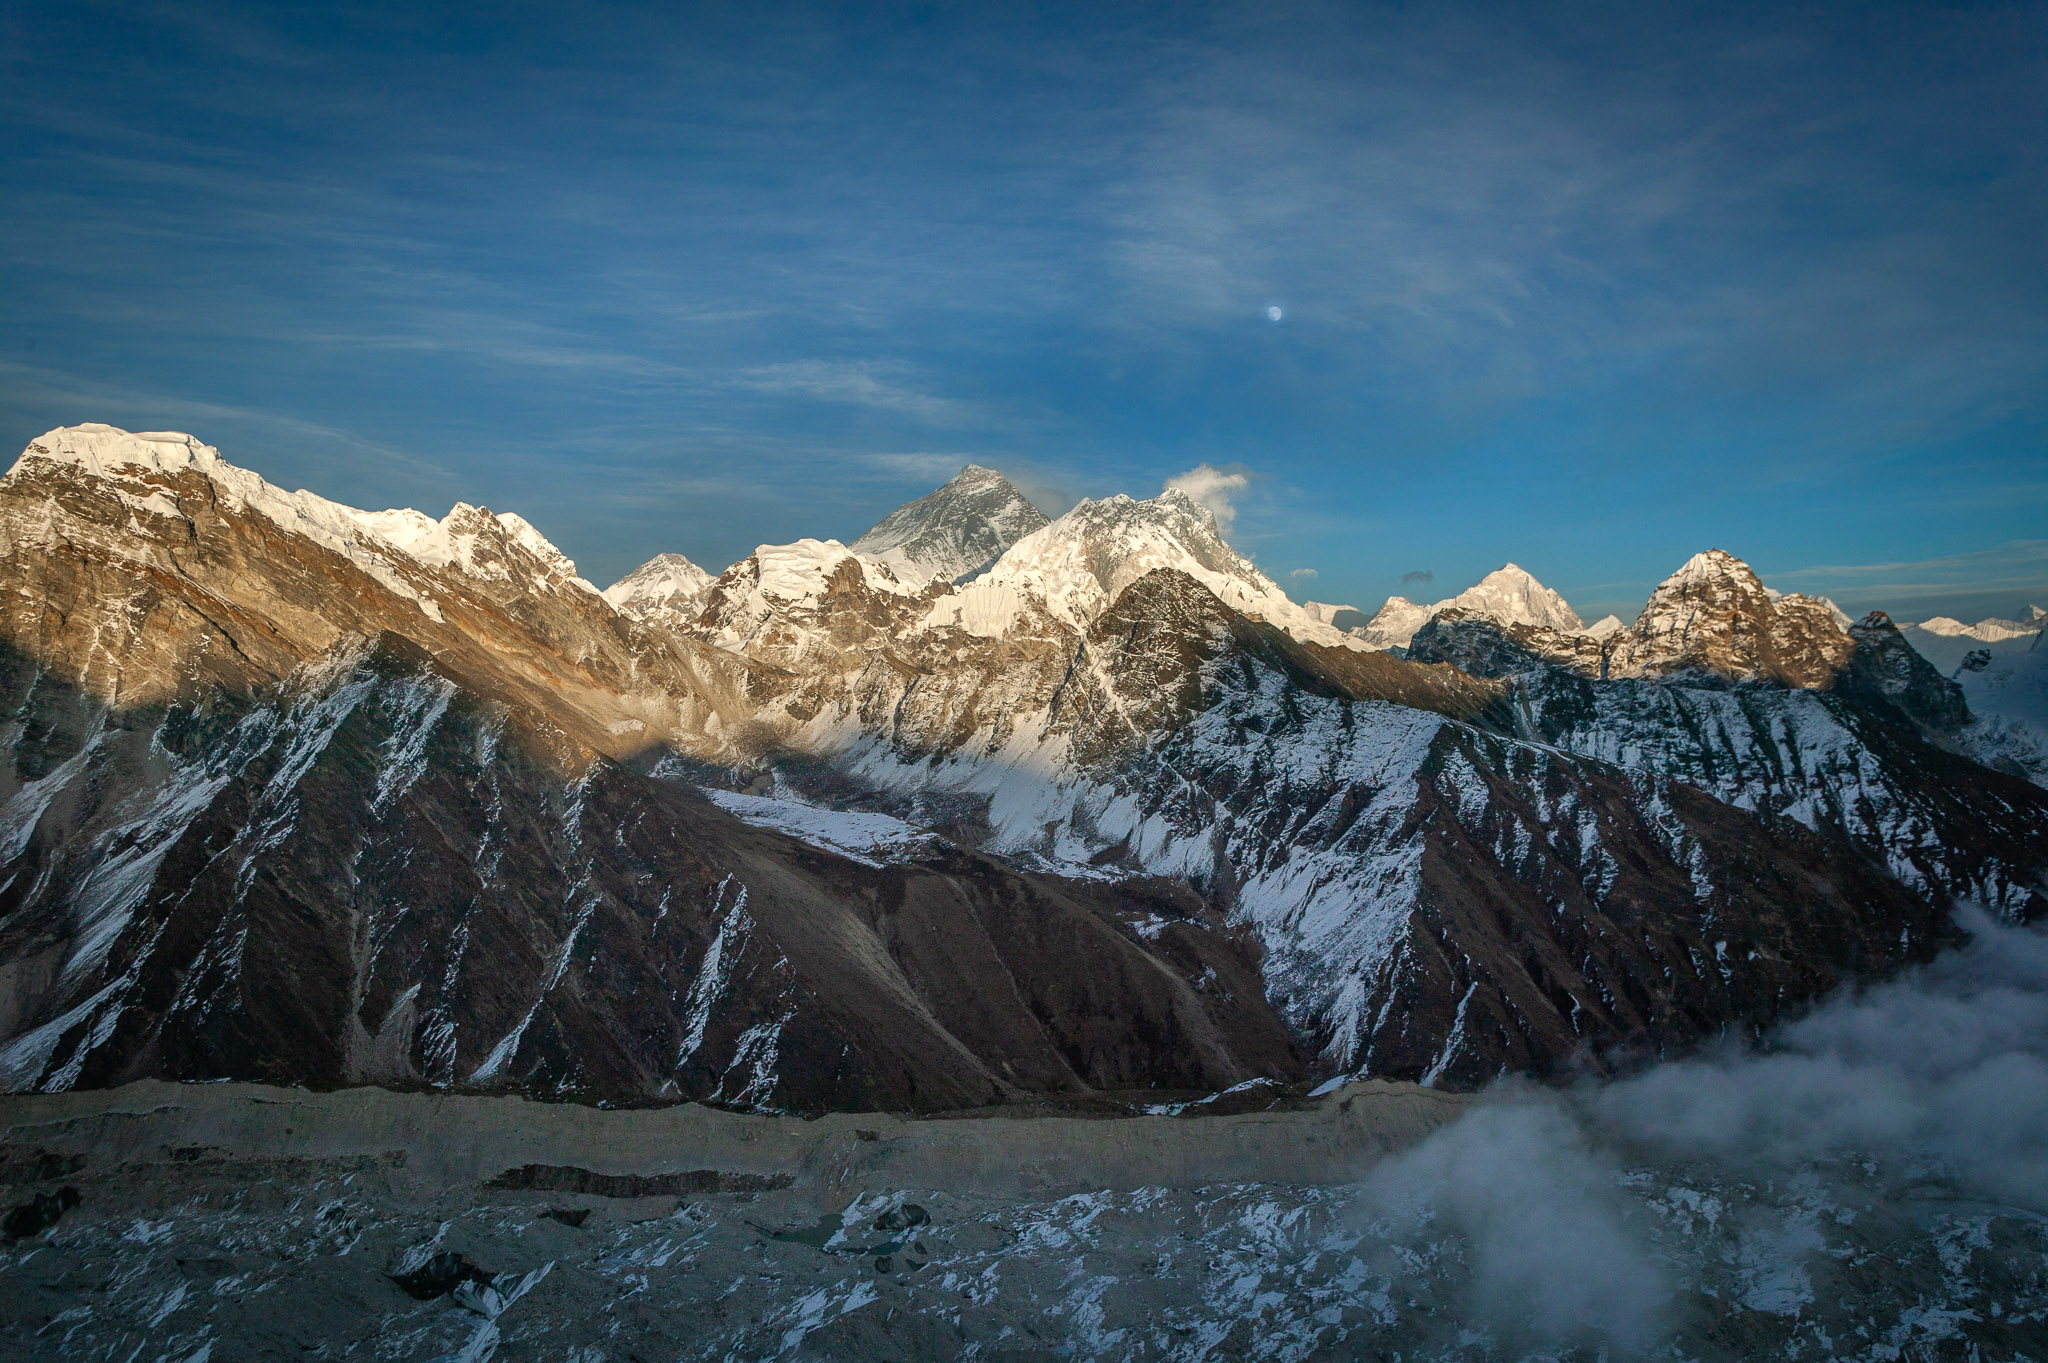 Last light & moonrise over Everest